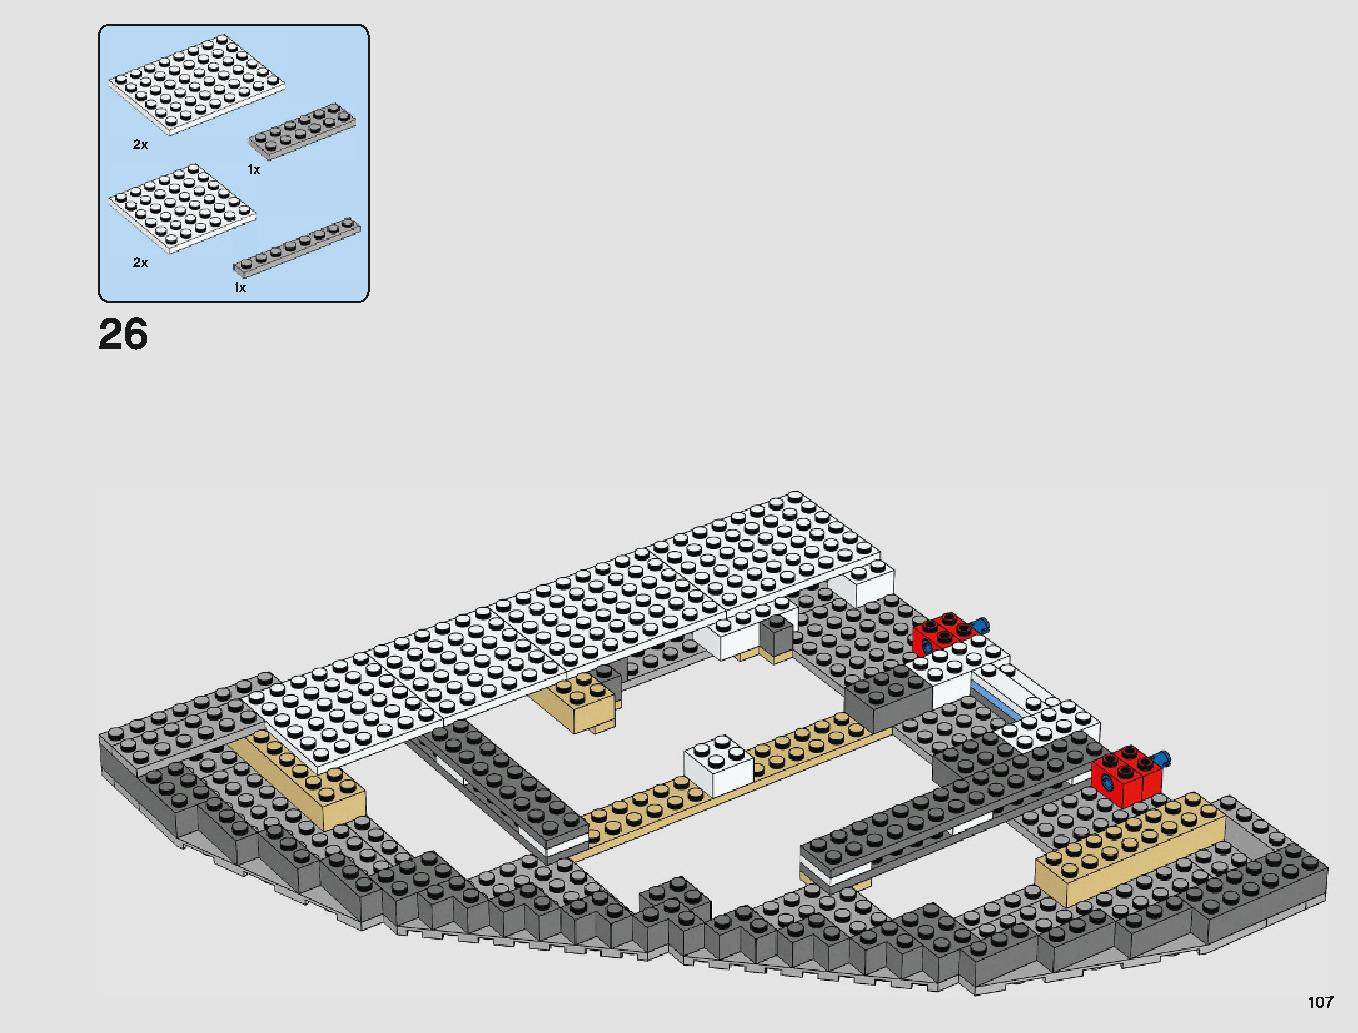 クラウド・シティ 75222 レゴの商品情報 レゴの説明書・組立方法 107 page